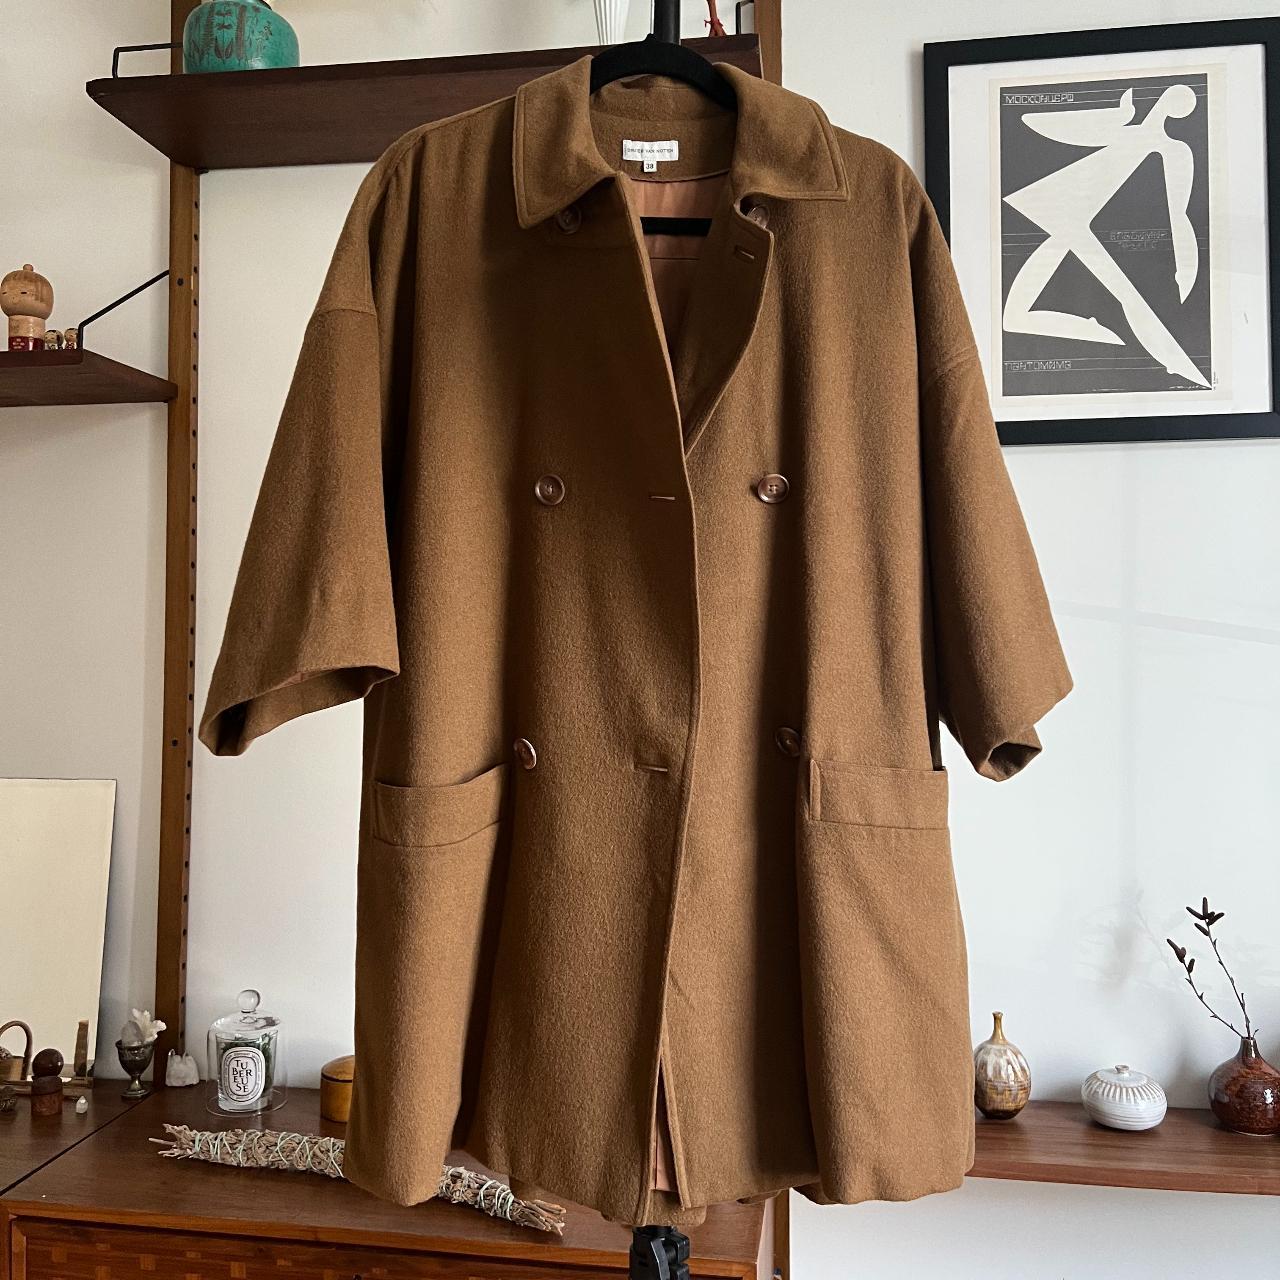 Dries Van Noten Women's Tan and Brown Coat (2)